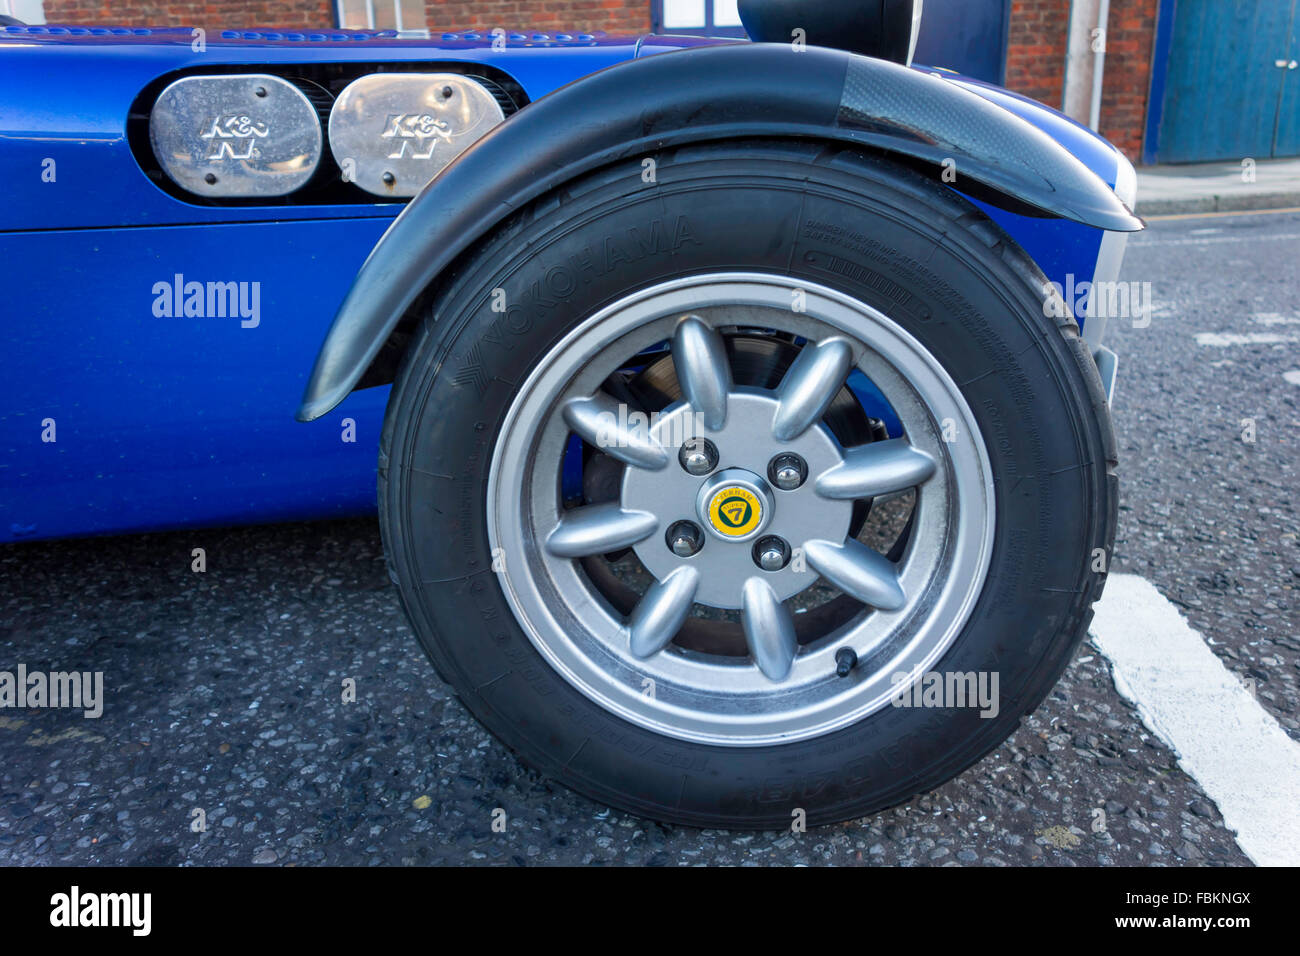 Un 1997 bleu enregistré 7 Caterham voiture de sport léger détail de la roue avant Banque D'Images